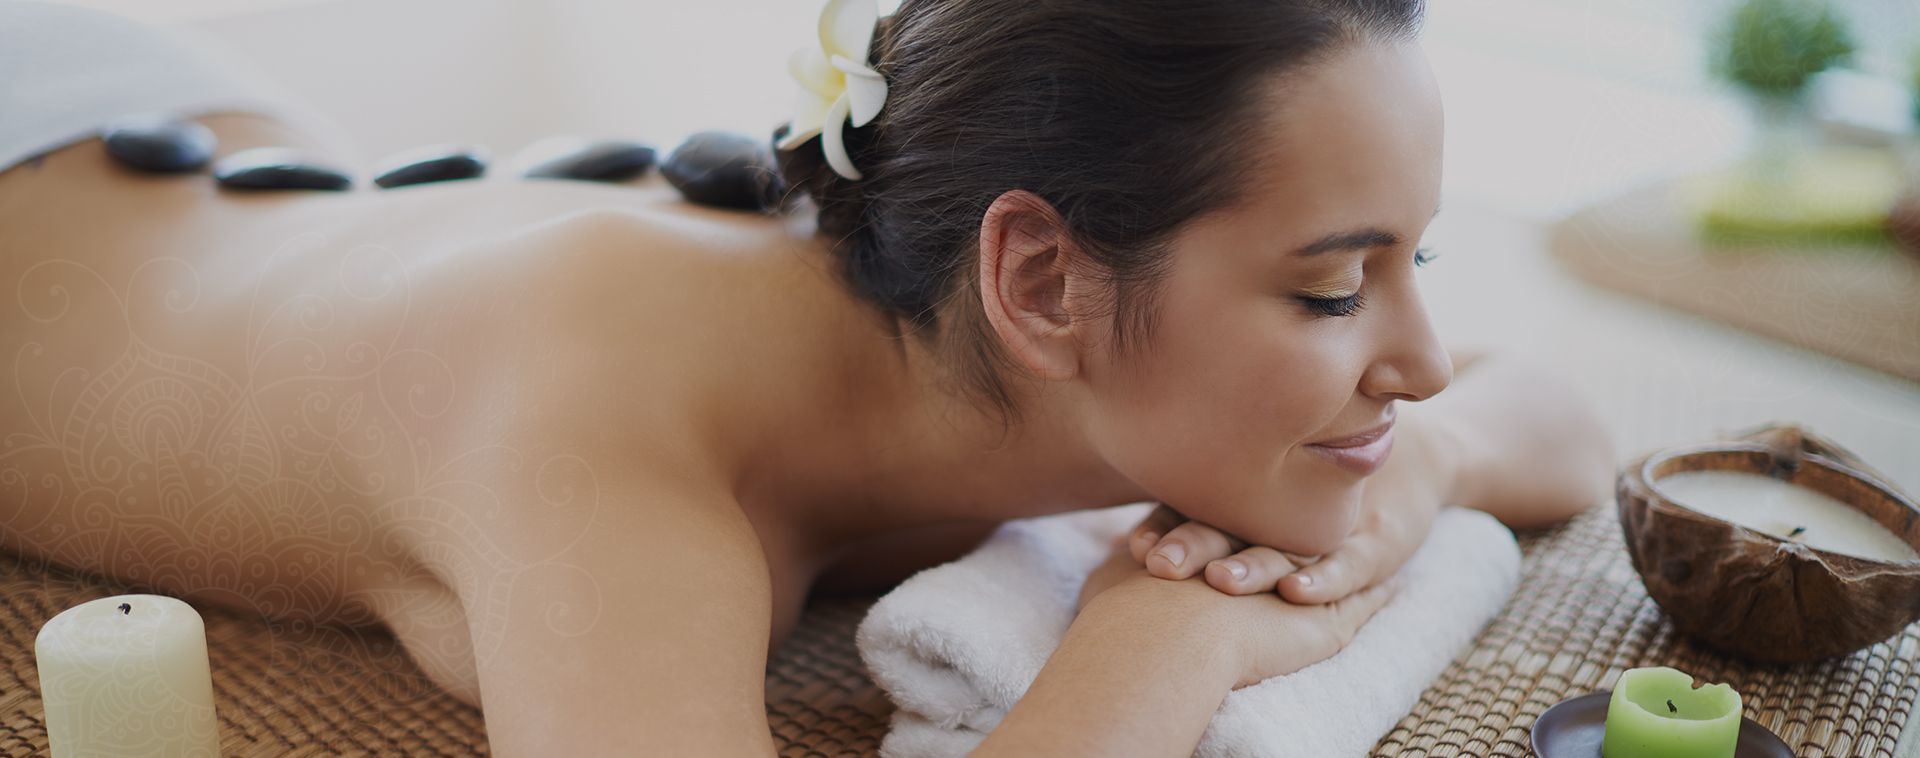 Best Asian Massage Las Vegas - Asian Massage Services & Prices